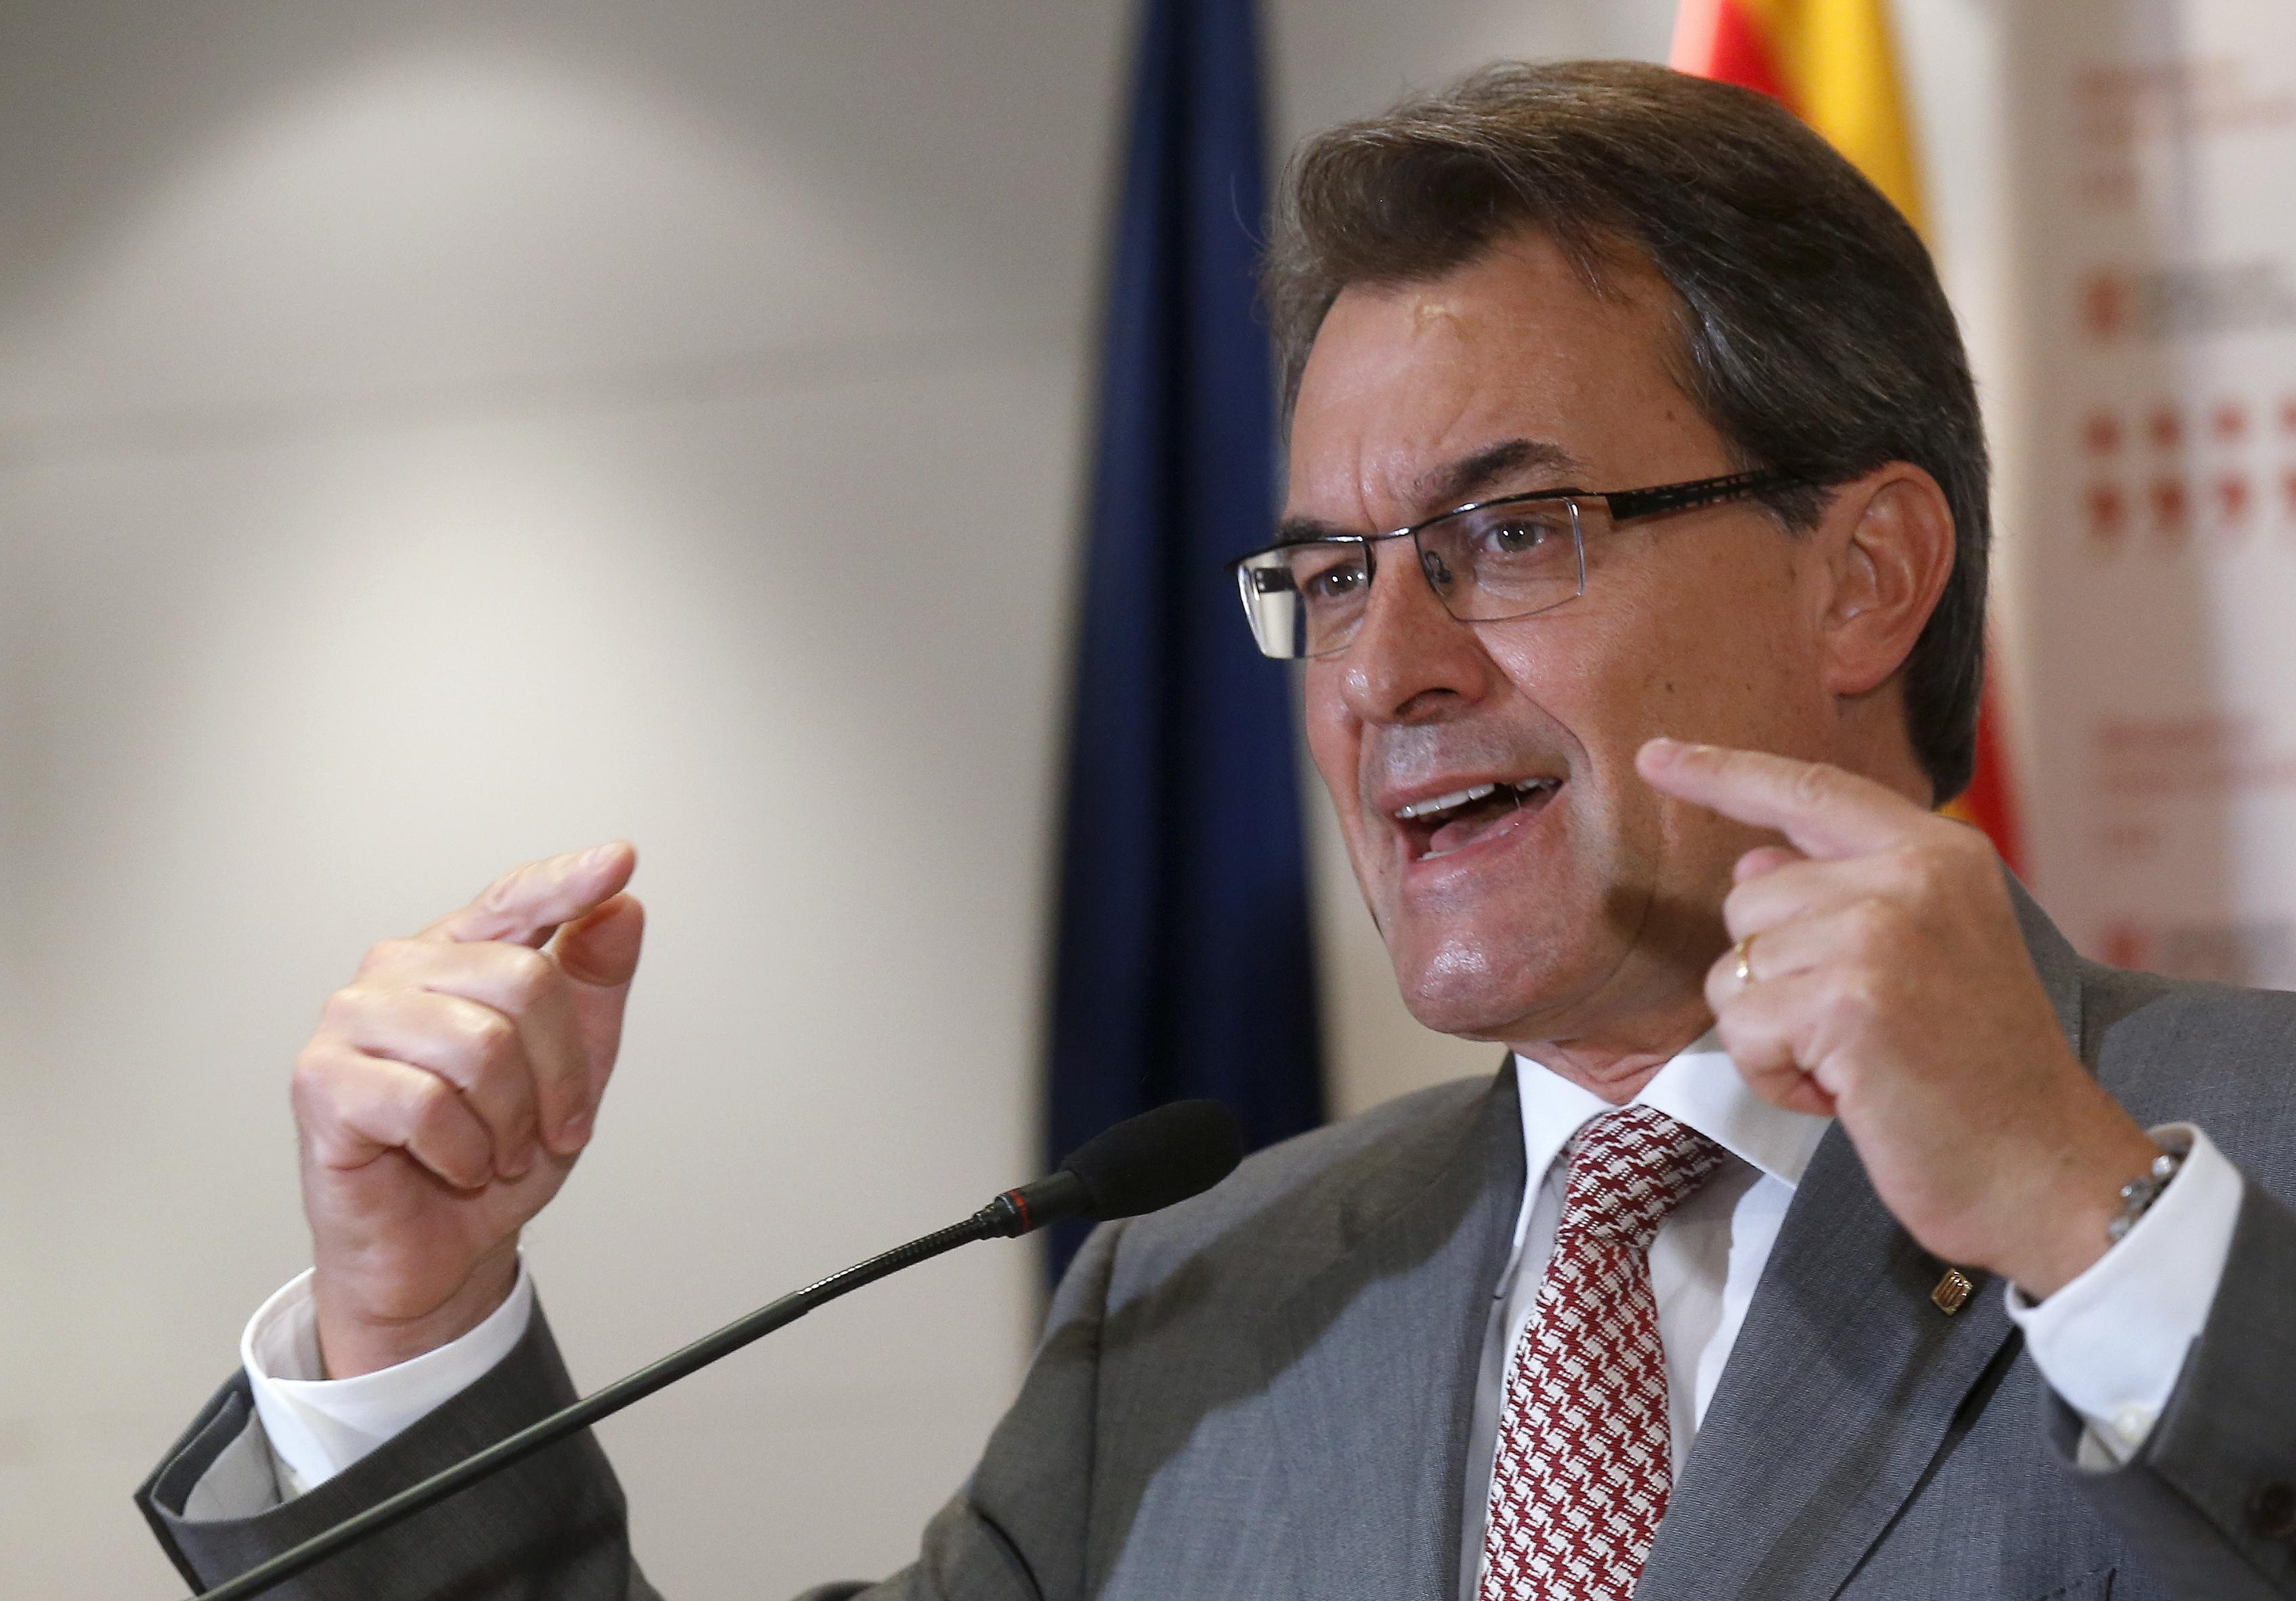 Ο Ραχόι αρνείται να διαπραγματευτεί ένα δημοσιονομικό σύμφωνο με την Καταλονία